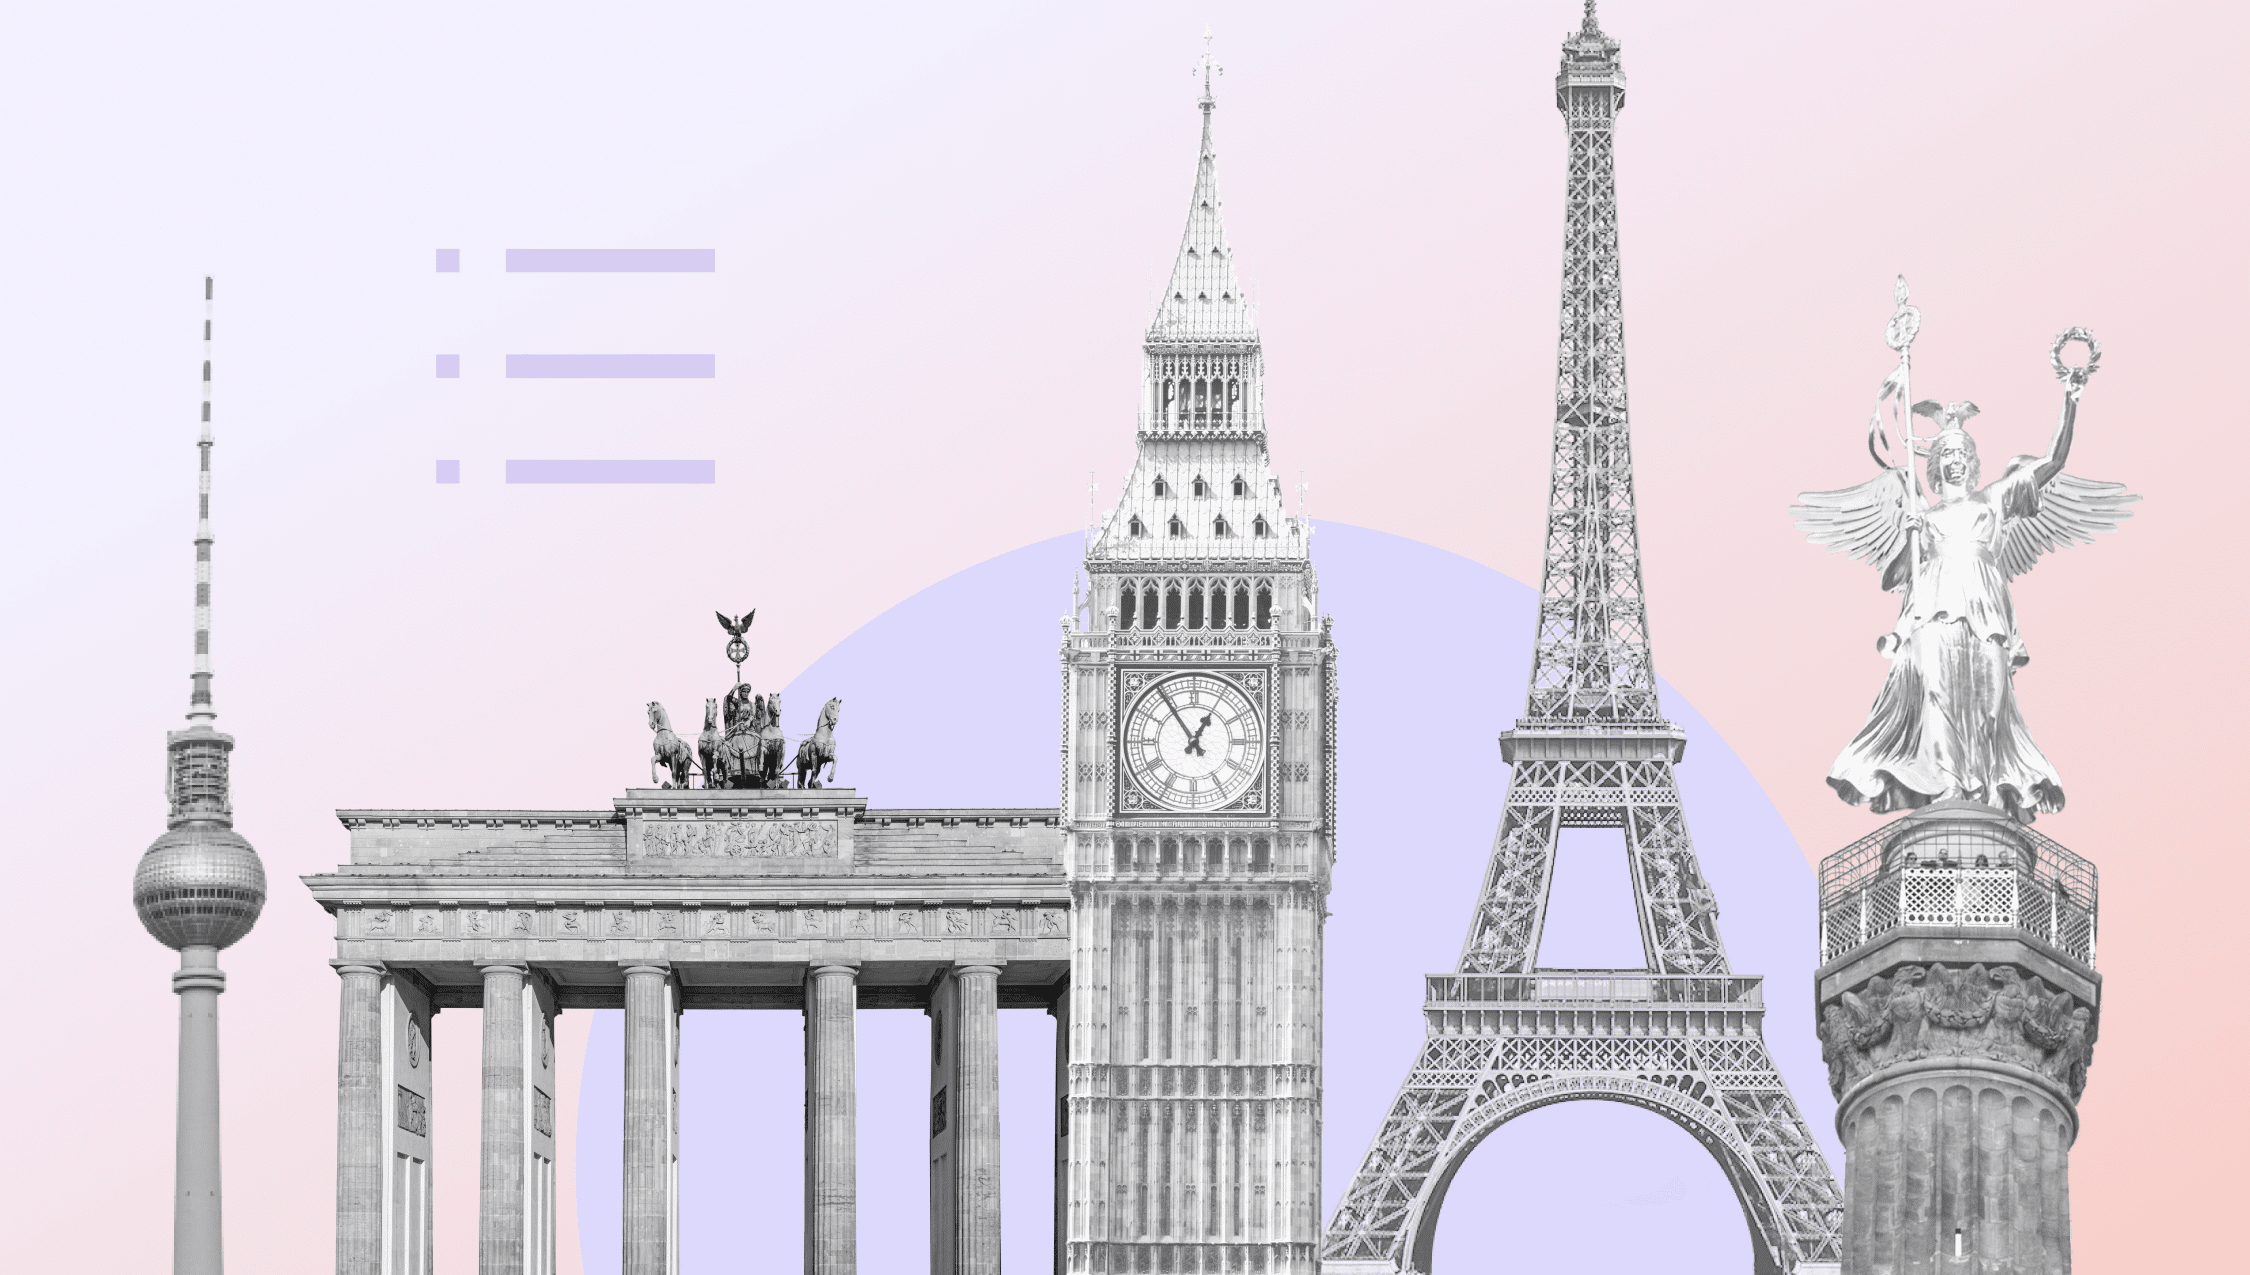 Denkmäler aus den größten europäischen Hauptstädten, darunter der Eiffelturm in Paris, Big Ben in London und der Fernsehturm in Berlin.